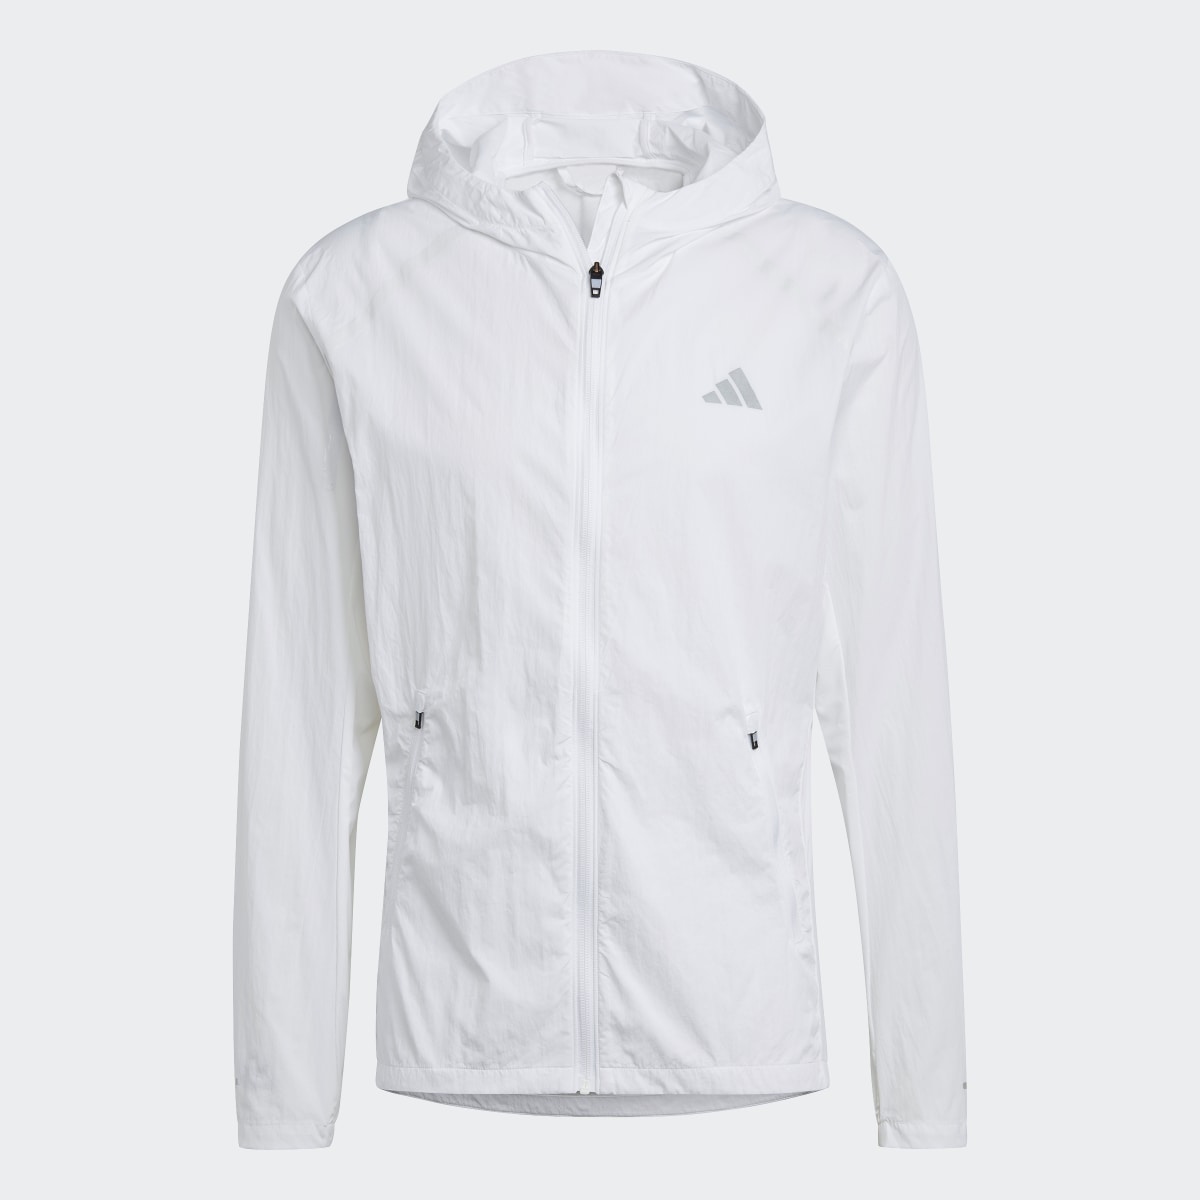 Adidas Marathon Warm-Up Jacket. 5